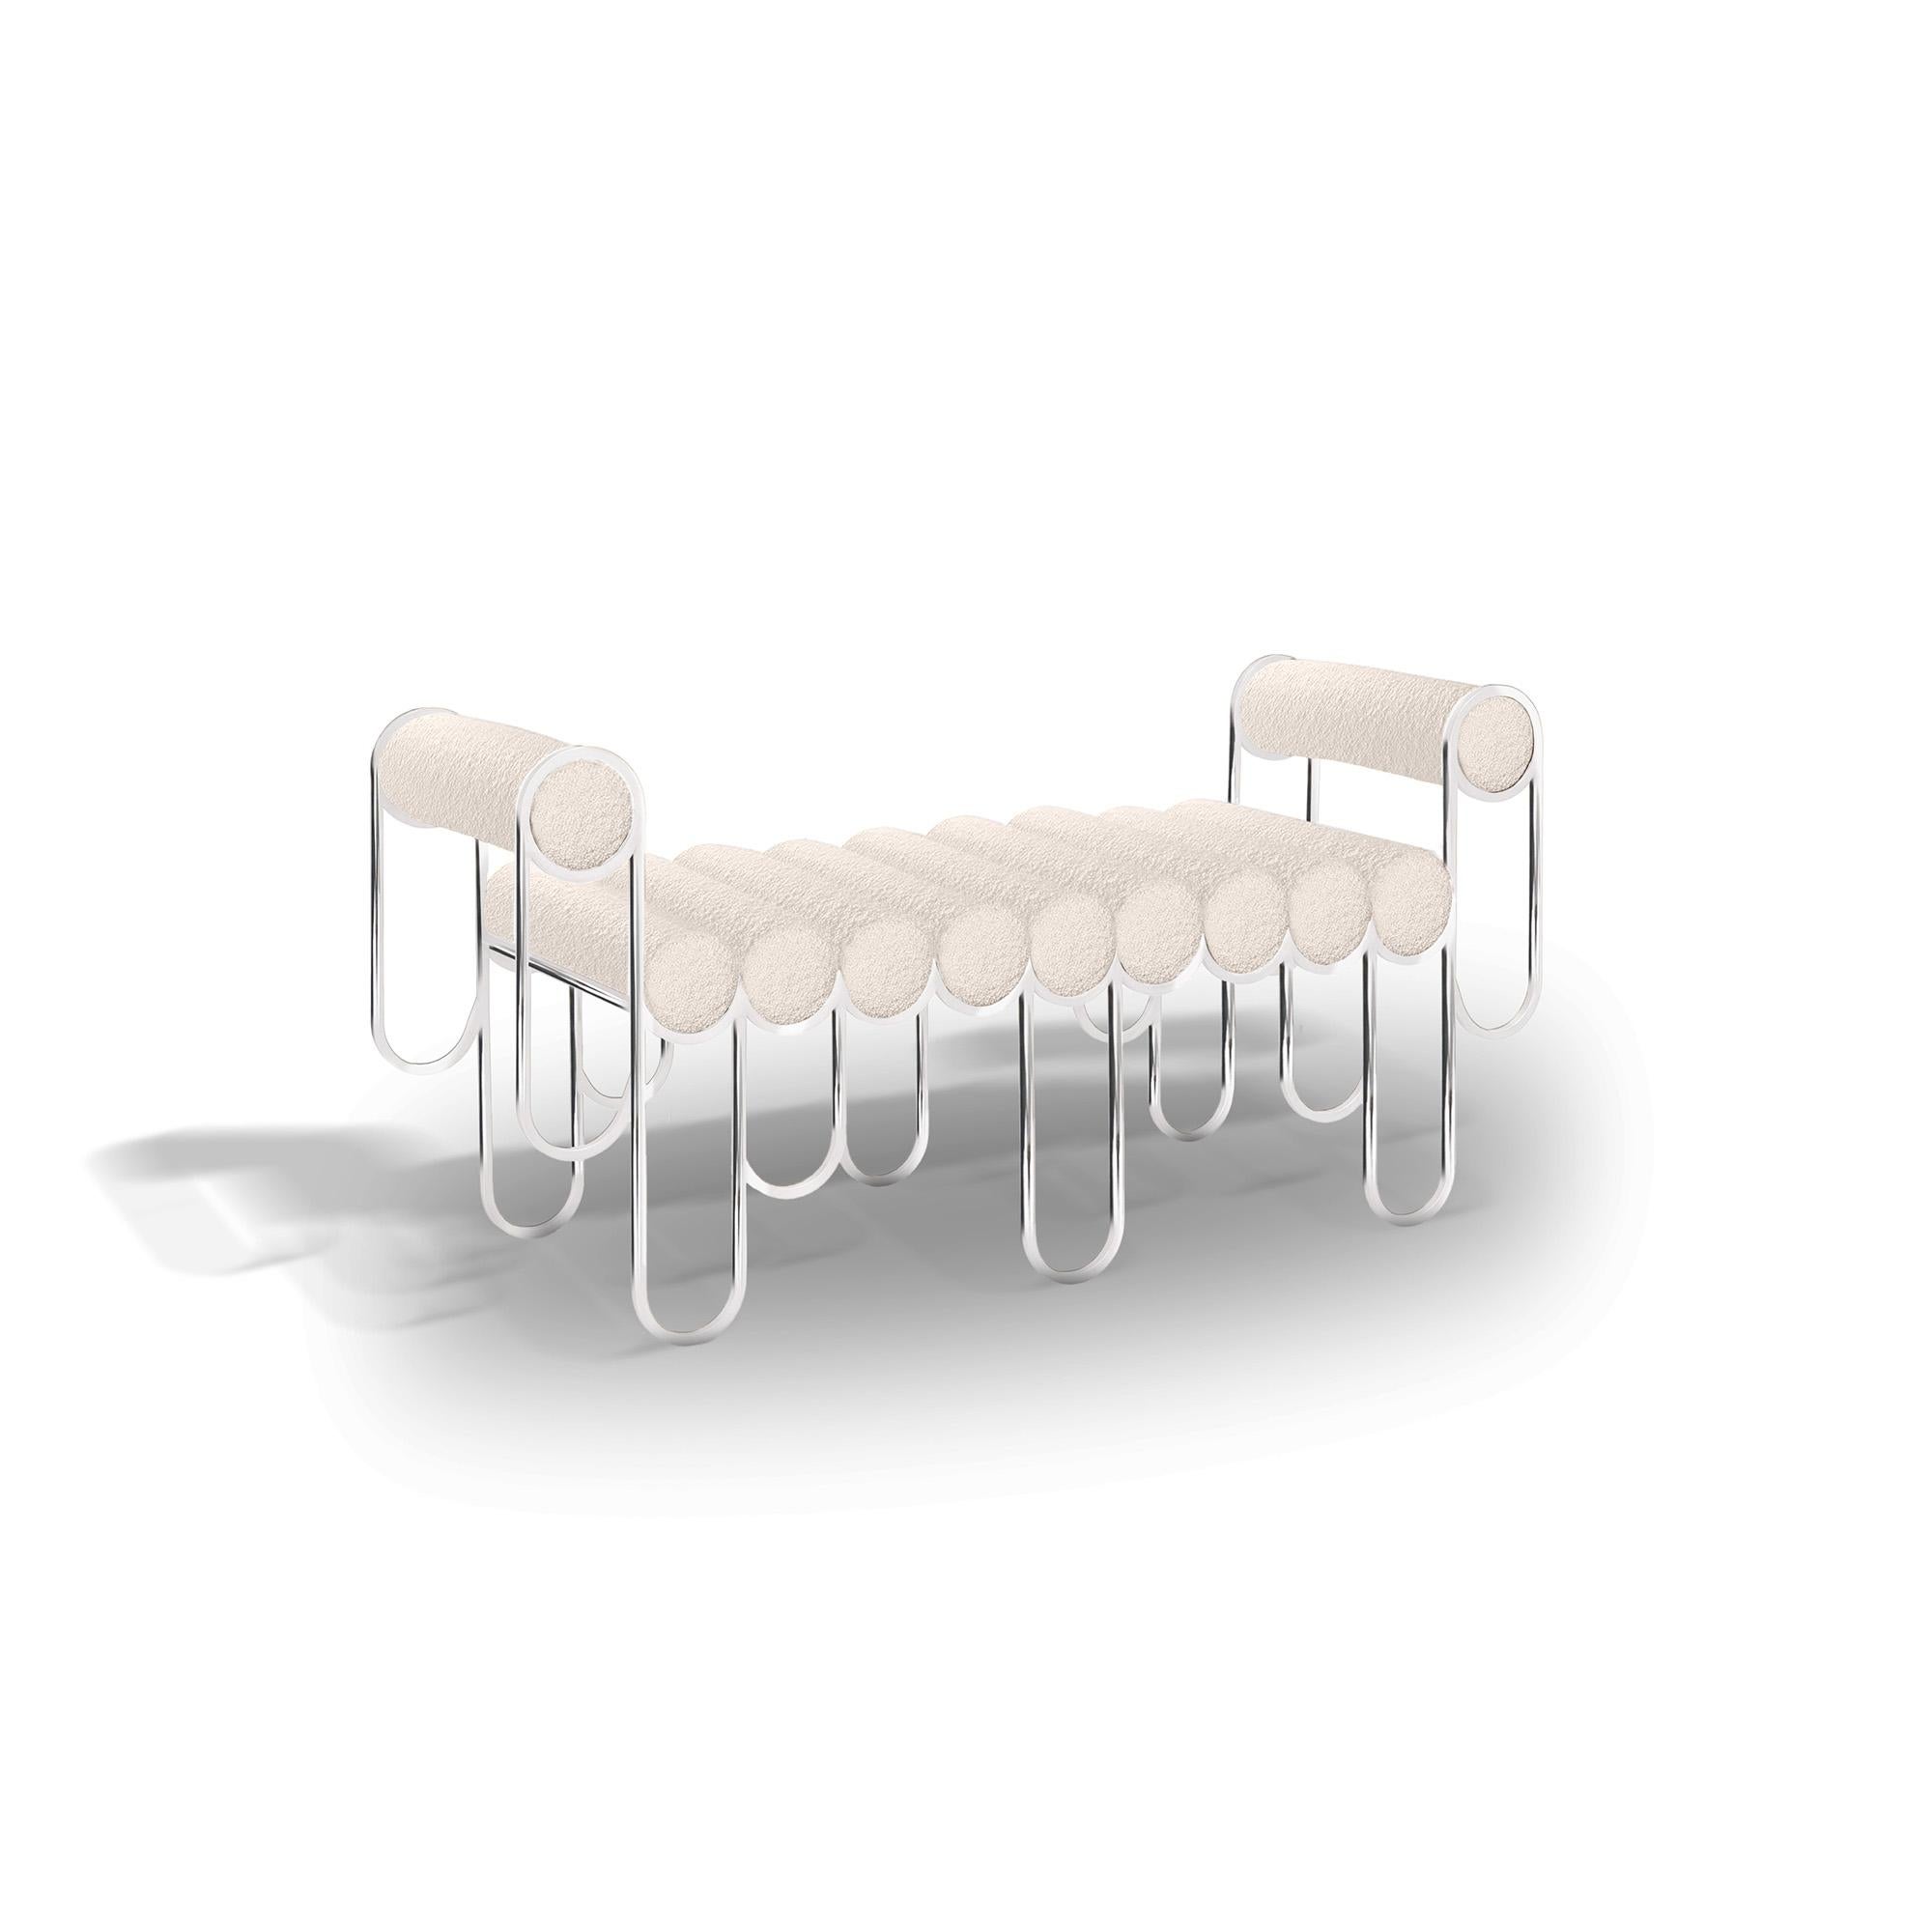 Der Sessel Apollo besteht aus einer Reihe spielerisch feiner, länglicher Metallschlaufen, die die gepolsterten Kissenrollen umarmen und so die lange, wellenförmige, schwebende Sitzfläche bilden. Die beiden Armlehnen werden von weiteren